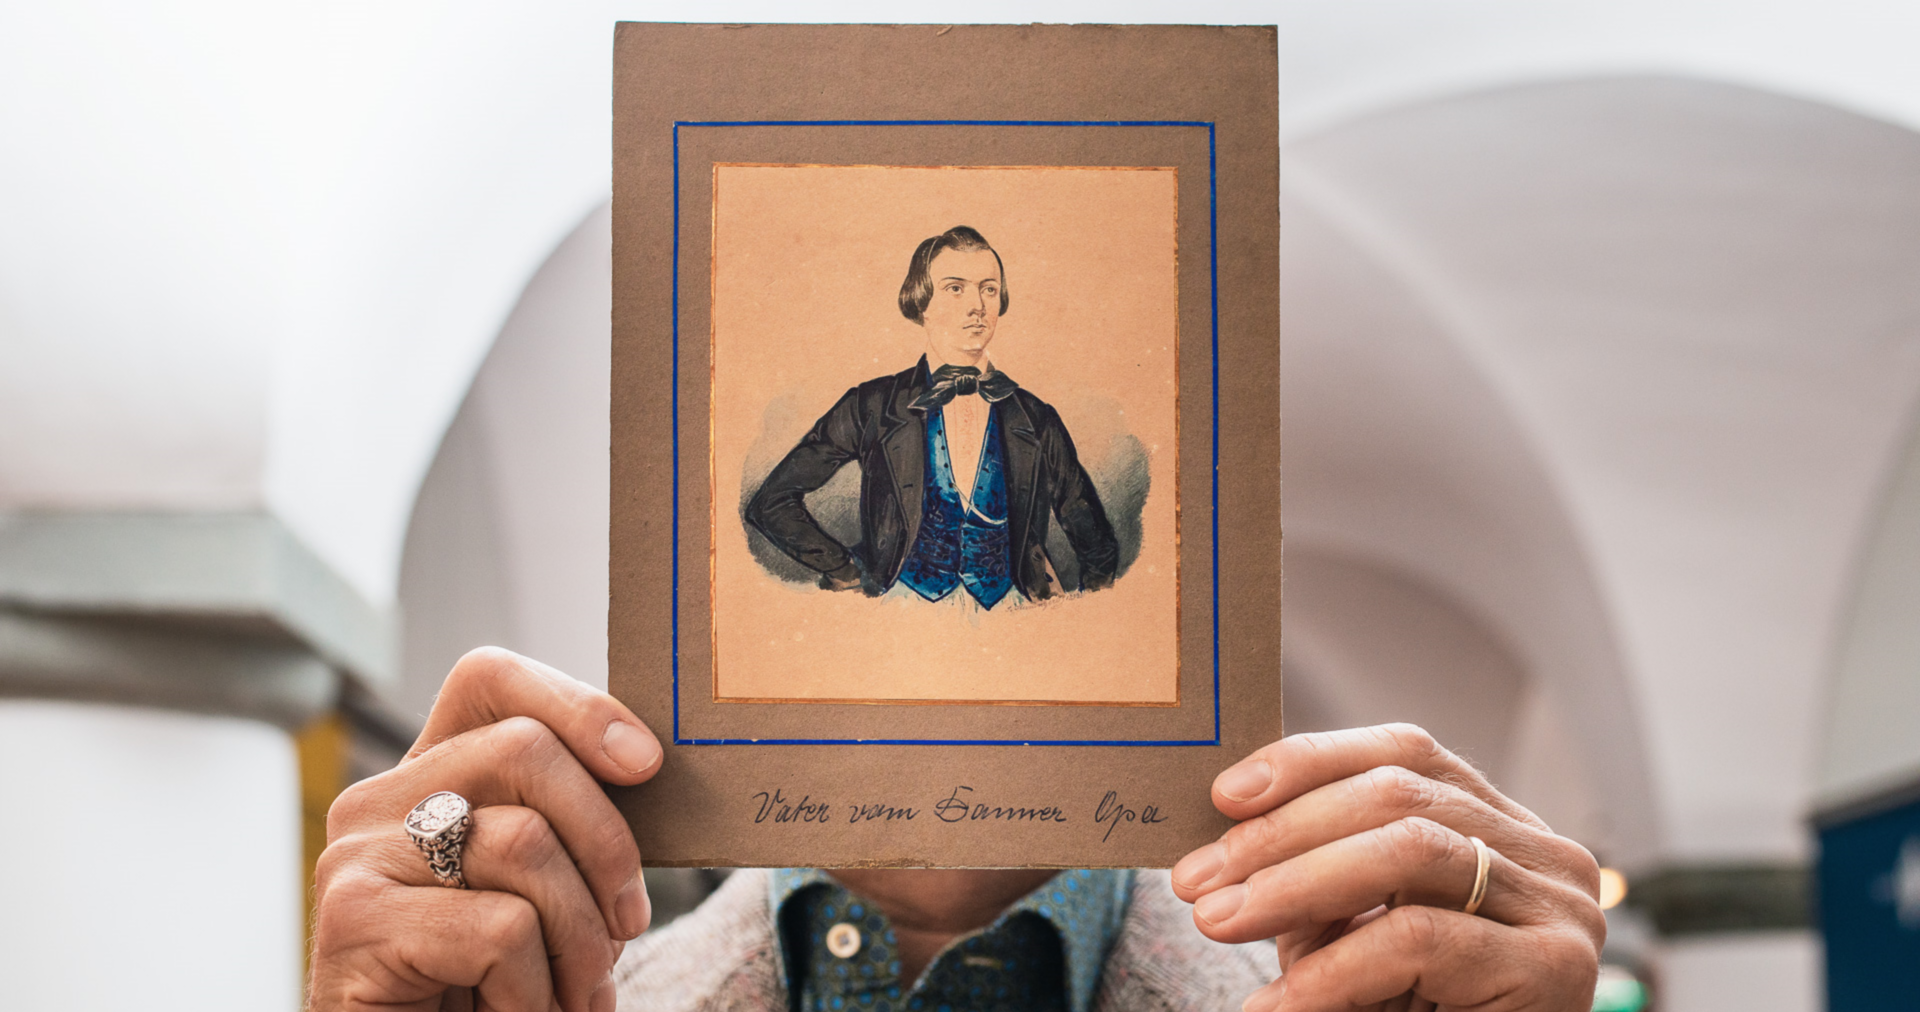 Die Gouache-Zeichnung aus dem Jahr 1840/45 zeigt den jungen Schneider Lukas Danner bekleidet mit einer schwarzen Jacke und blauen Weste.